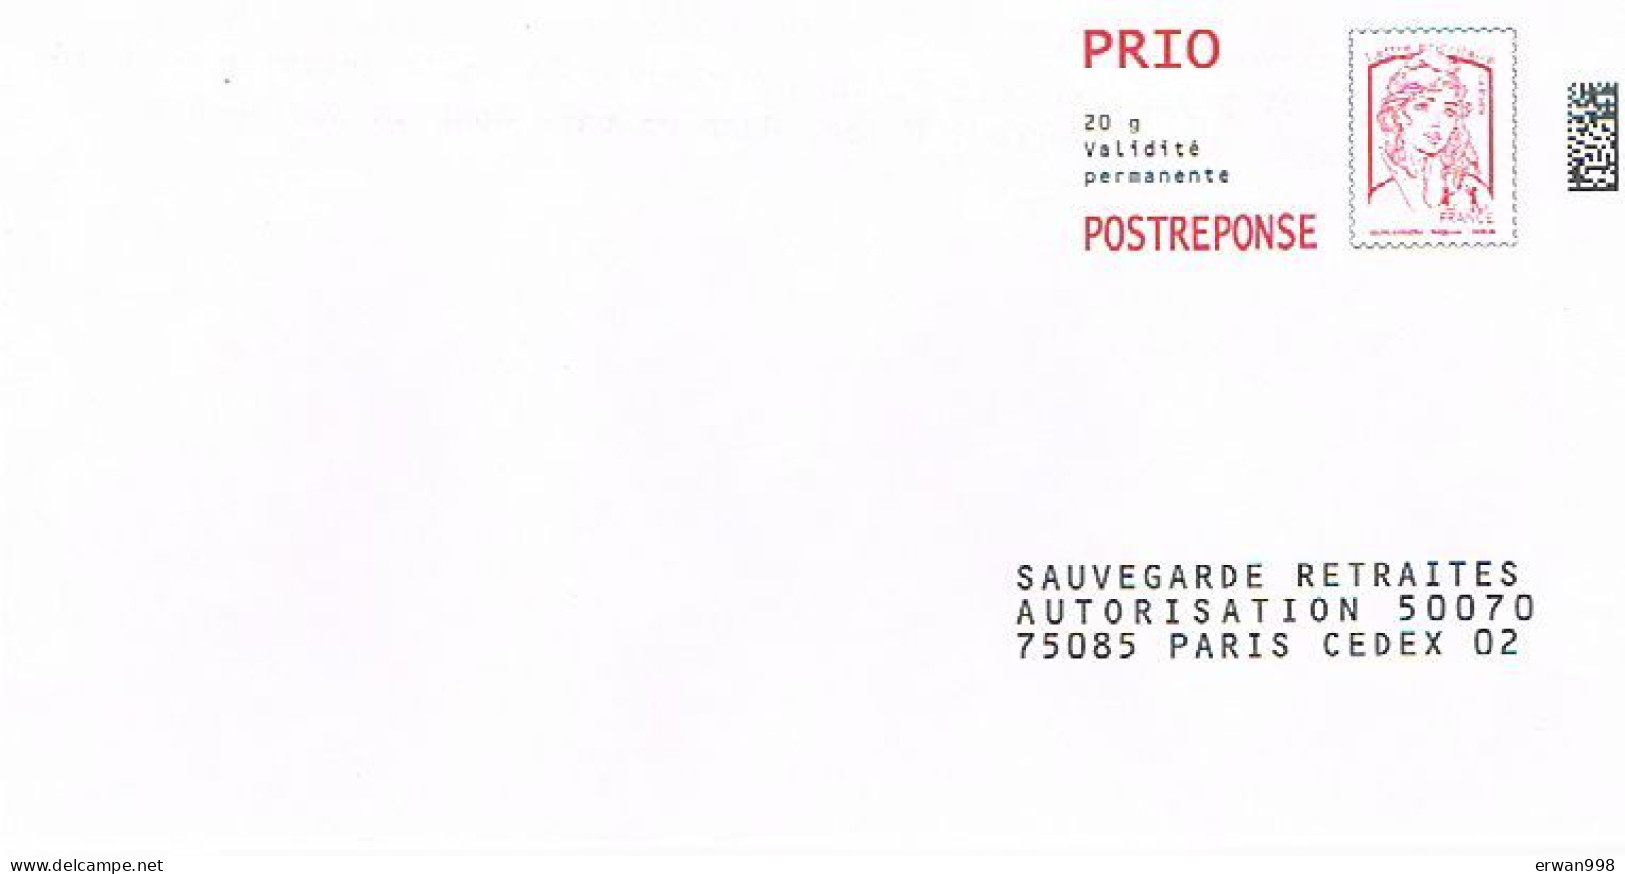 75 PARIS Postréponse SAUVEGARDE RETRAITE MARIANNE CIAPPA-KAWENA 14P264    (1270) - Prêts-à-poster: Réponse /Ciappa-Kavena